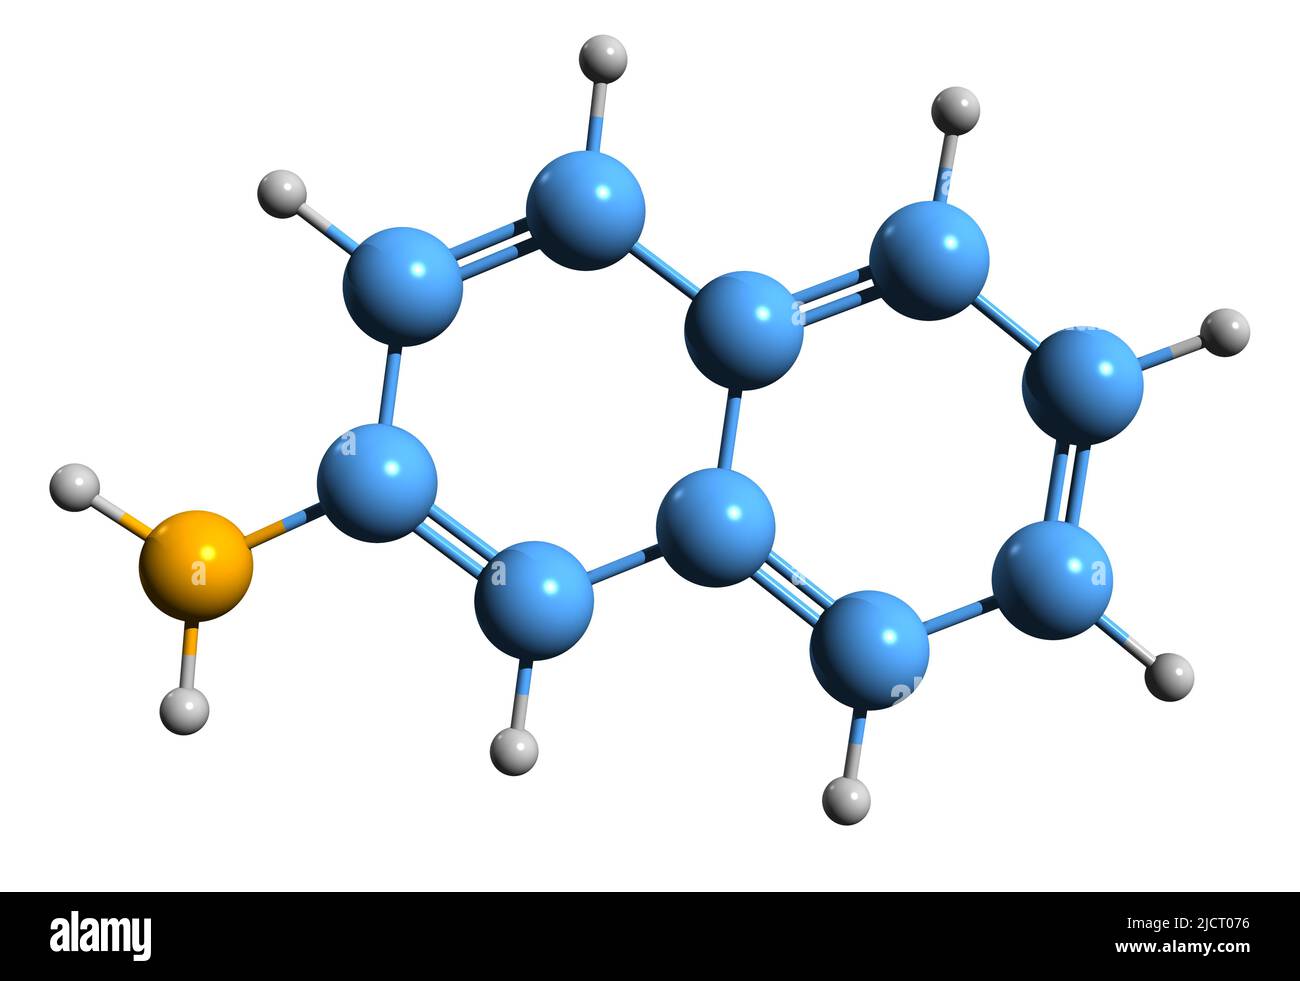 3D Aufnahme von 2-Naphthylamin Skelettformel - molekularchemische Struktur von Naphthalen-2-Amin isoliert auf weißem Hintergrund Stockfoto